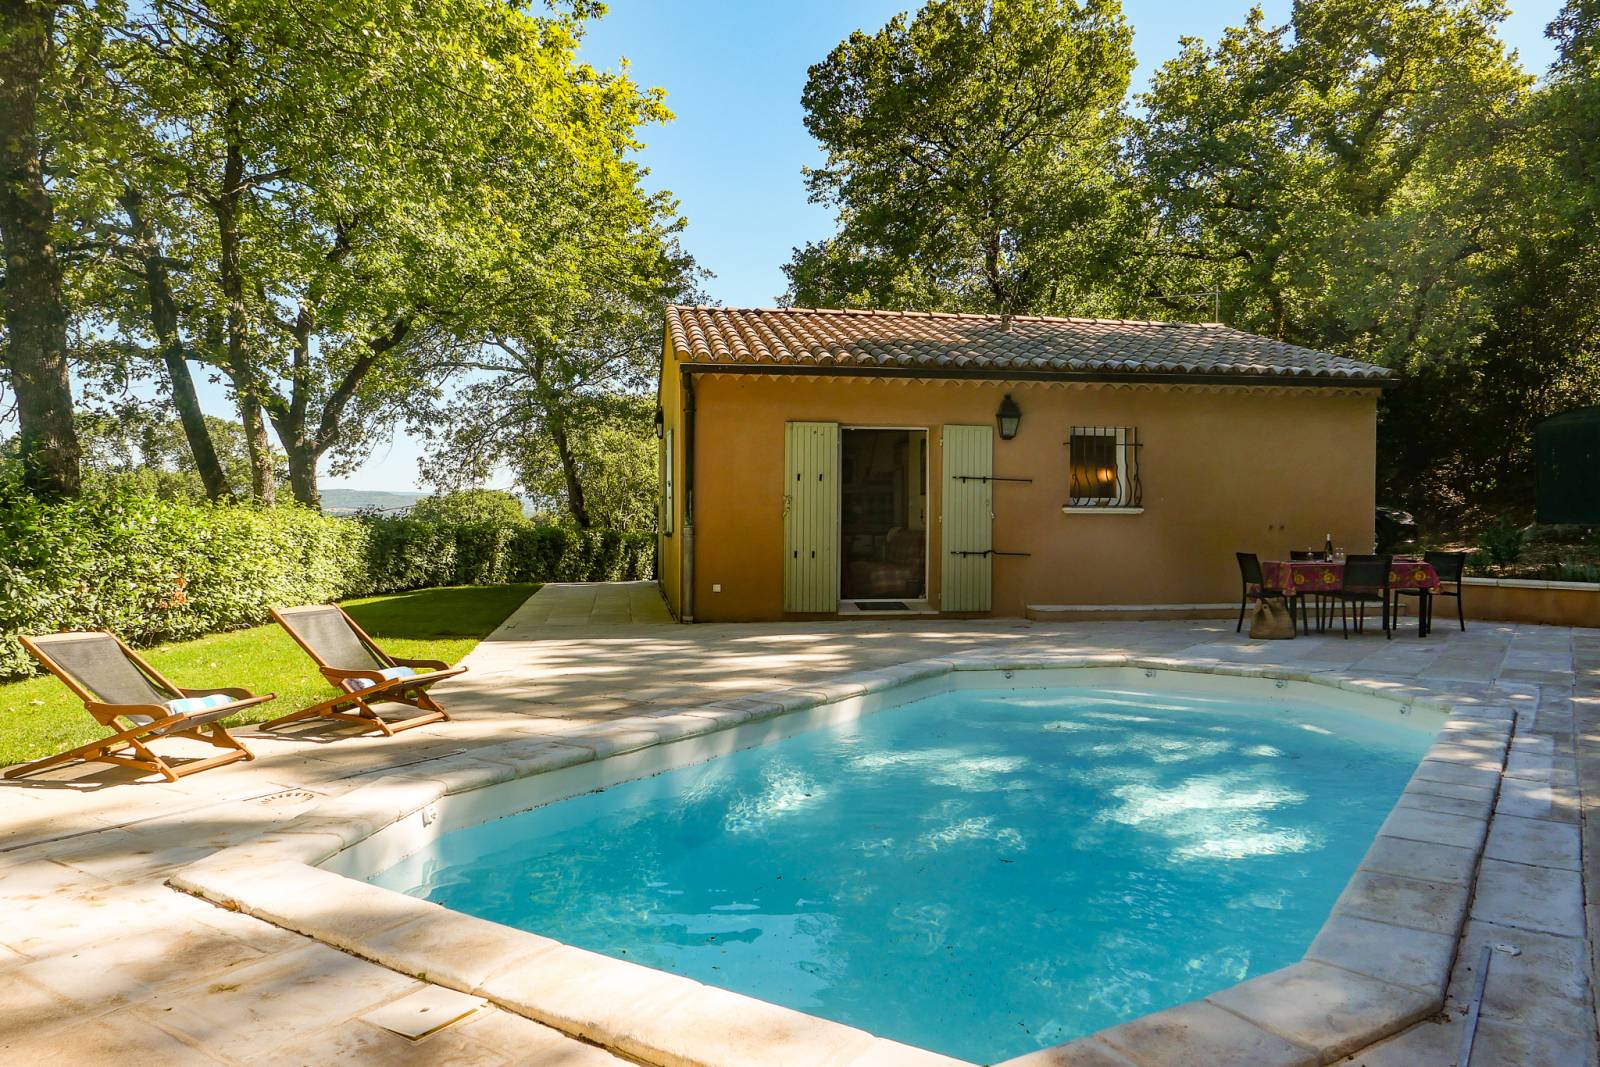 Location pour un week-end en Drôme Provençale, jardin et terrain de pétanque